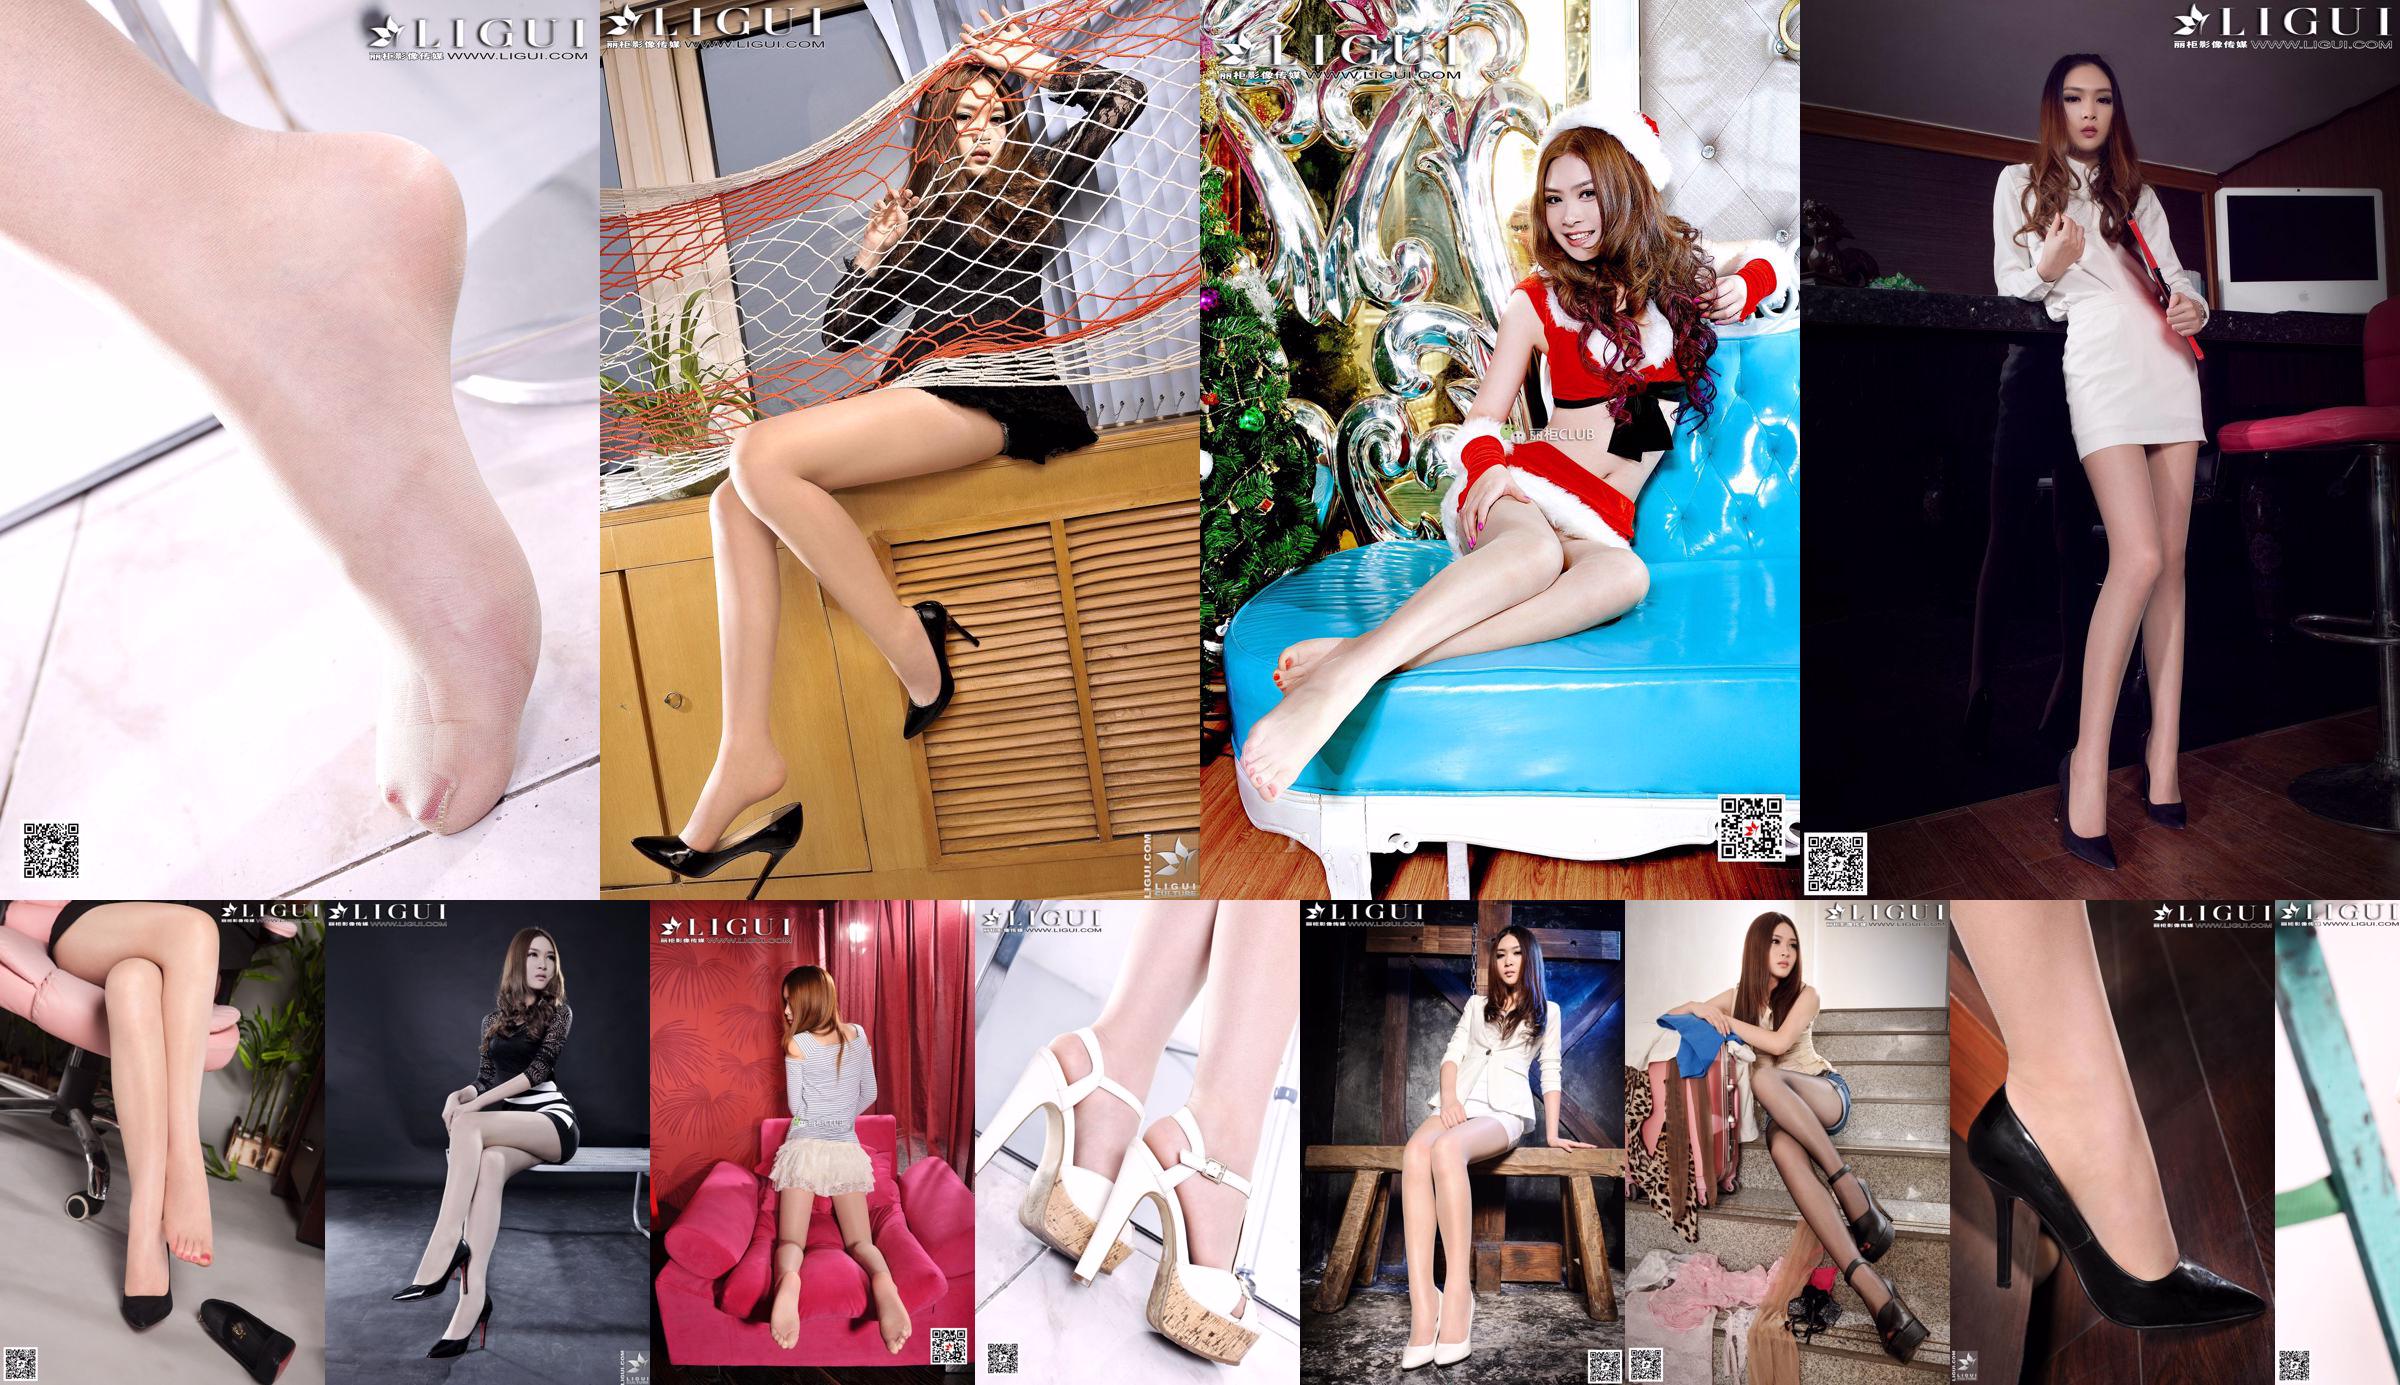 [丽 柜 LiGui] Model Yoona's "Meisje met hoge hakken en zijden voeten in een jurk" Volledige collectie mooie benen en jade voeten No.a440e8 Pagina 1